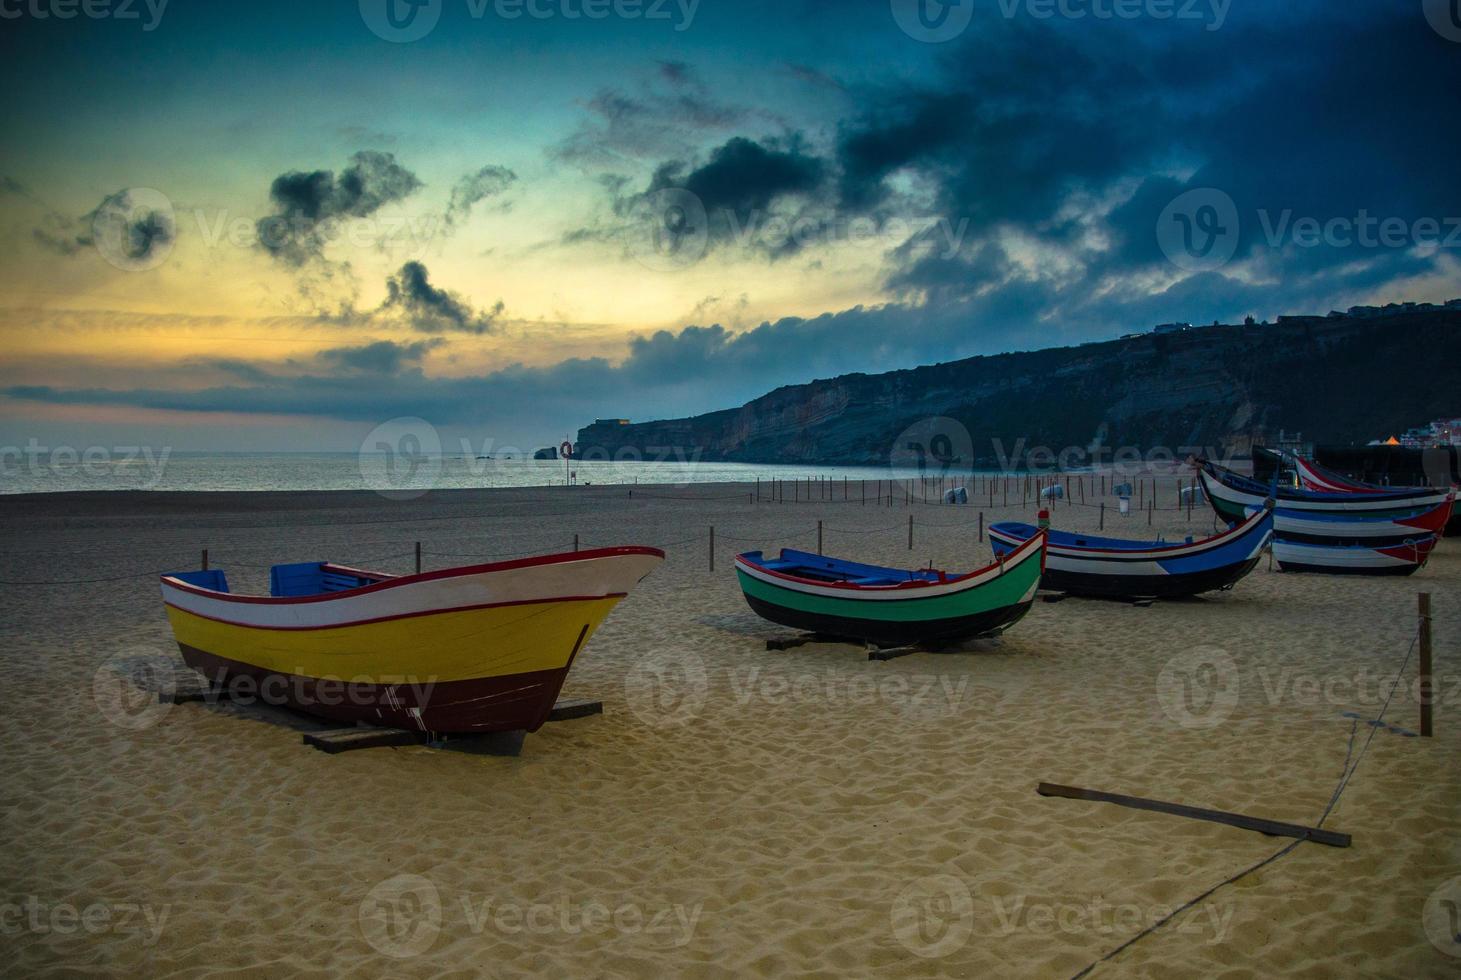 portugal, plage de nazare, bateaux en bois colorés, vue panoramique sur la ville de nazare, bateaux de pêche traditionnels portugais photo